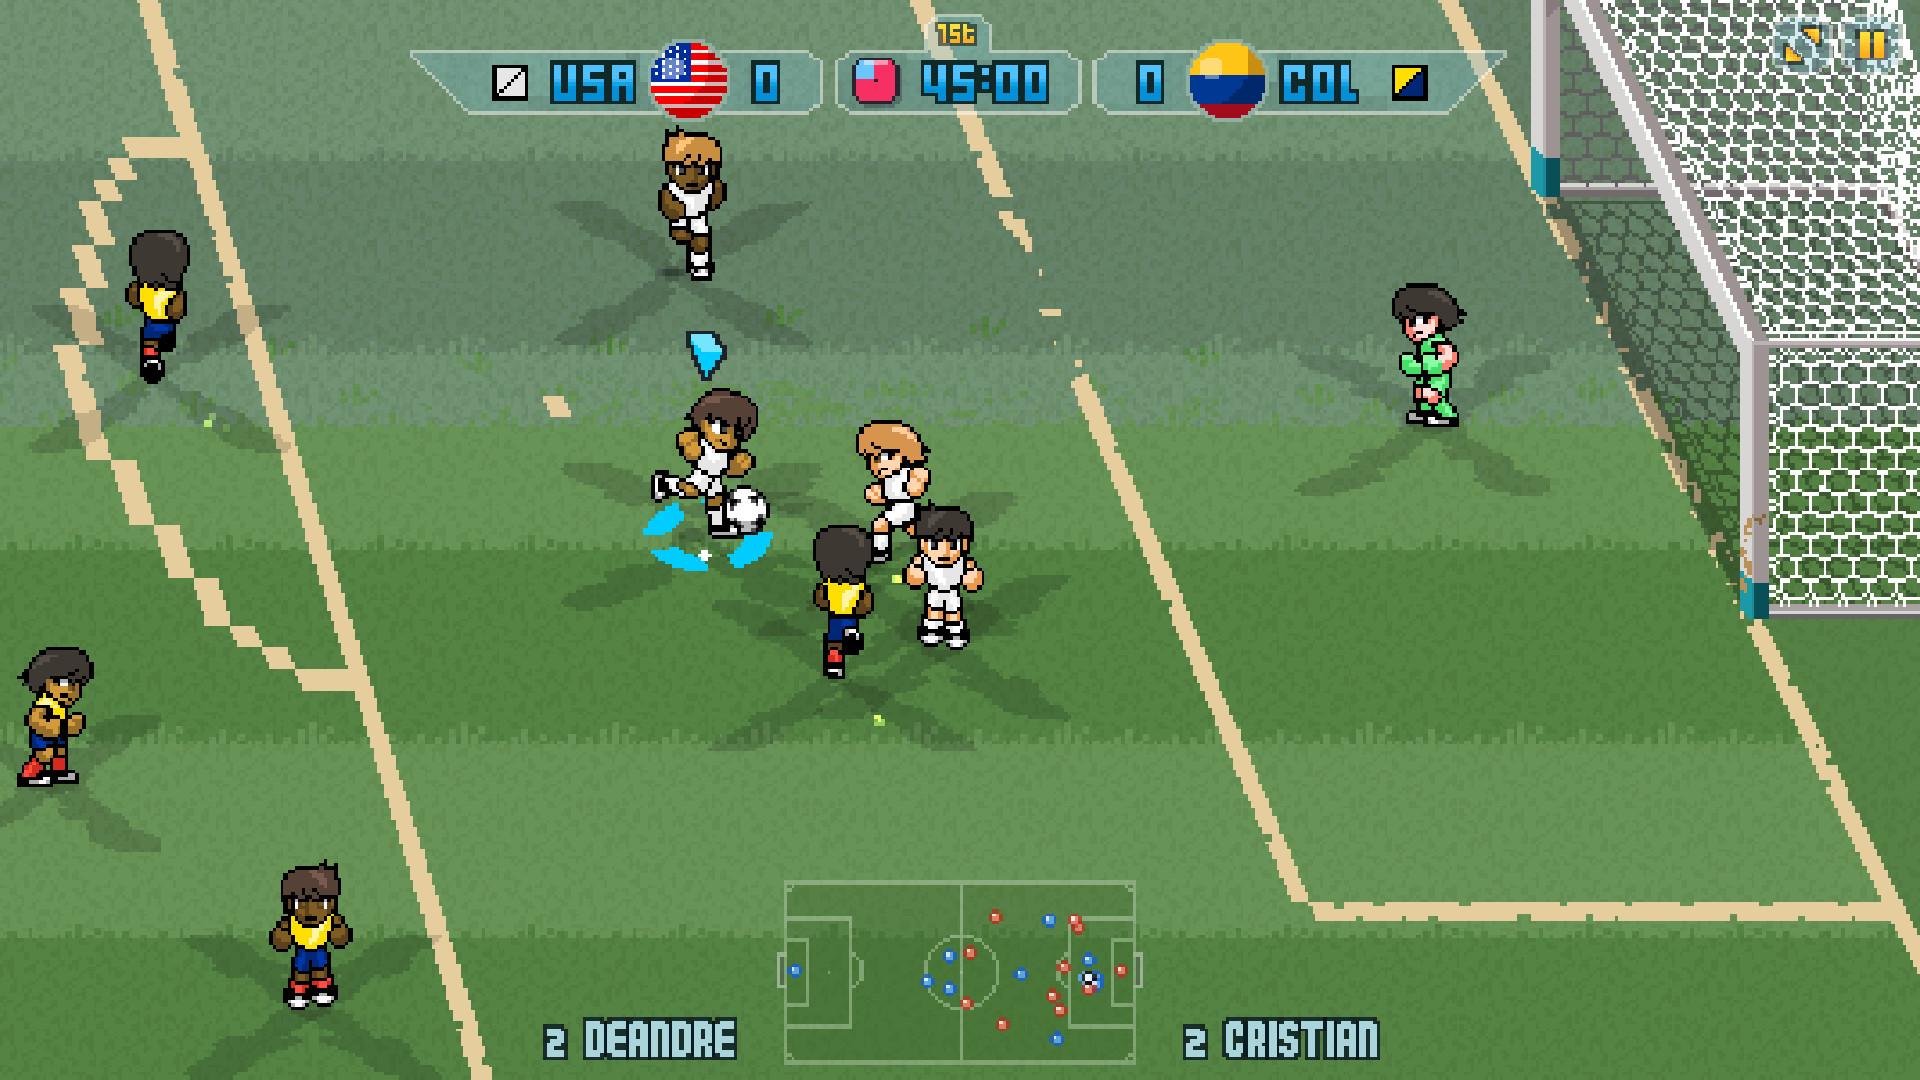 非常经典的开罗足球俱乐部模拟经营游戏热介绍